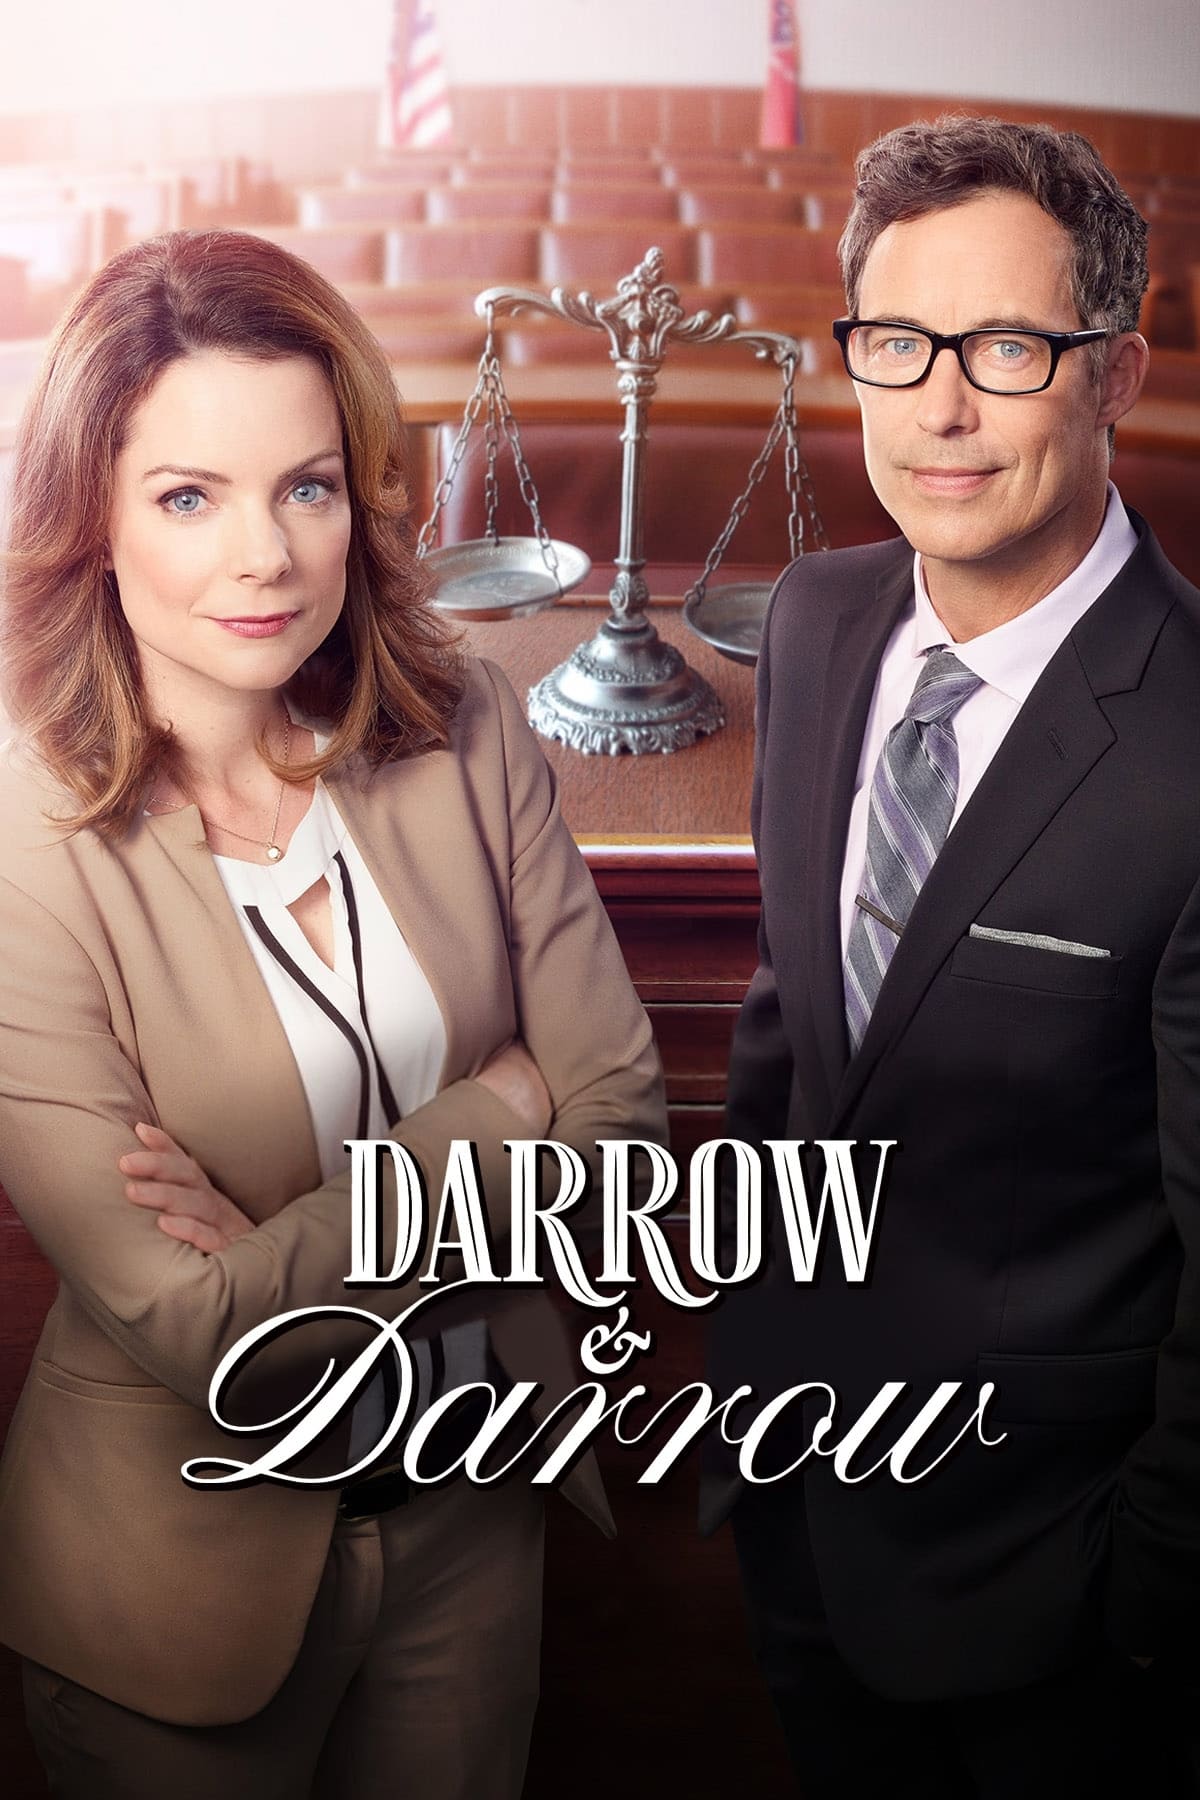 Darrow & Darrow Associados (2017)